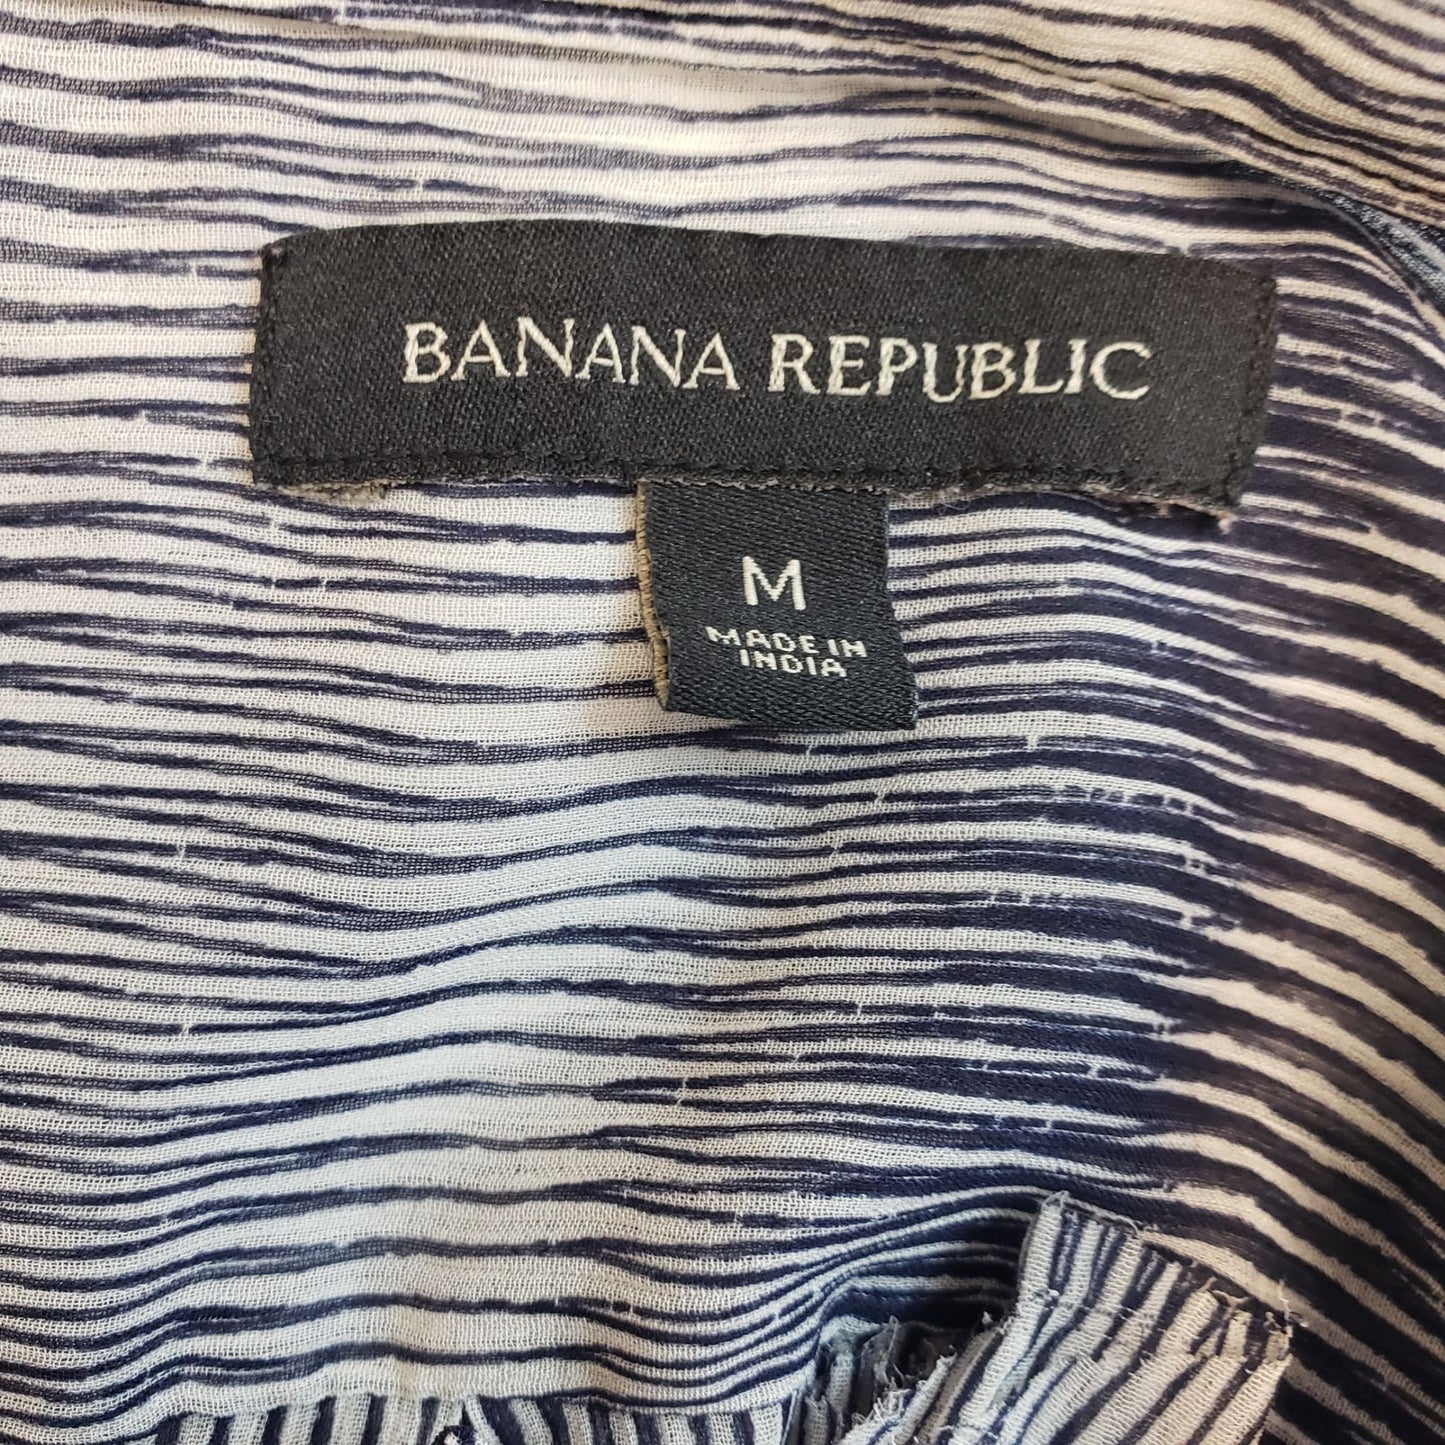 Banana Republic Semi-Sheer Ruffle Trim Button Down Blouse Size Medium